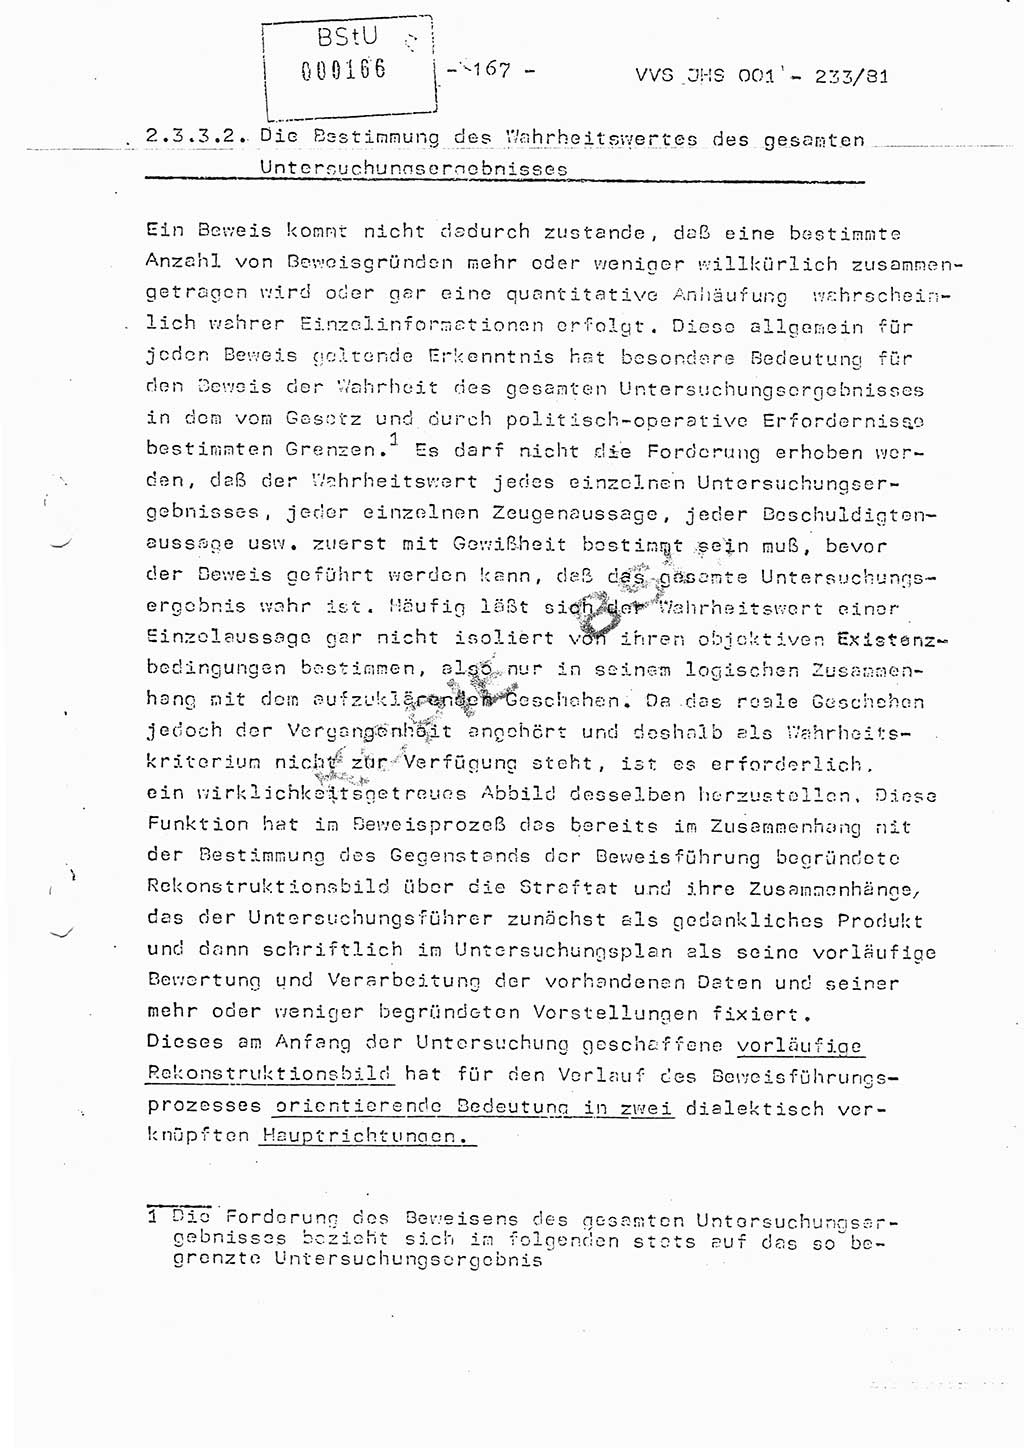 Dissertation Oberstleutnant Horst Zank (JHS), Oberstleutnant Dr. Karl-Heinz Knoblauch (JHS), Oberstleutnant Gustav-Adolf Kowalewski (HA Ⅸ), Oberstleutnant Wolfgang Plötner (HA Ⅸ), Ministerium für Staatssicherheit (MfS) [Deutsche Demokratische Republik (DDR)], Juristische Hochschule (JHS), Vertrauliche Verschlußsache (VVS) o001-233/81, Potsdam 1981, Blatt 167 (Diss. MfS DDR JHS VVS o001-233/81 1981, Bl. 167)